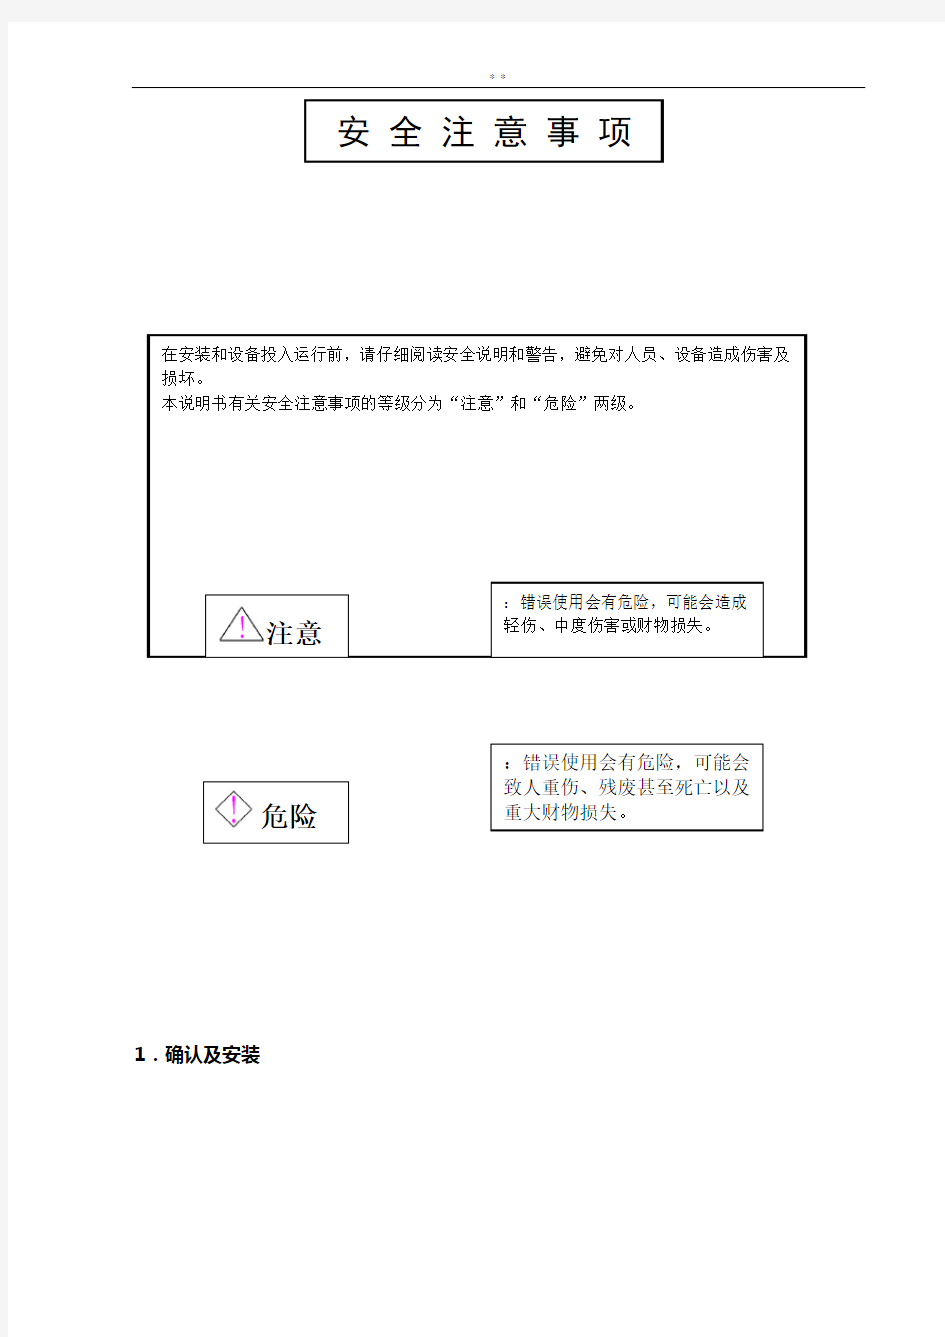 ACVF门机变频器调试使用说明(中文版)